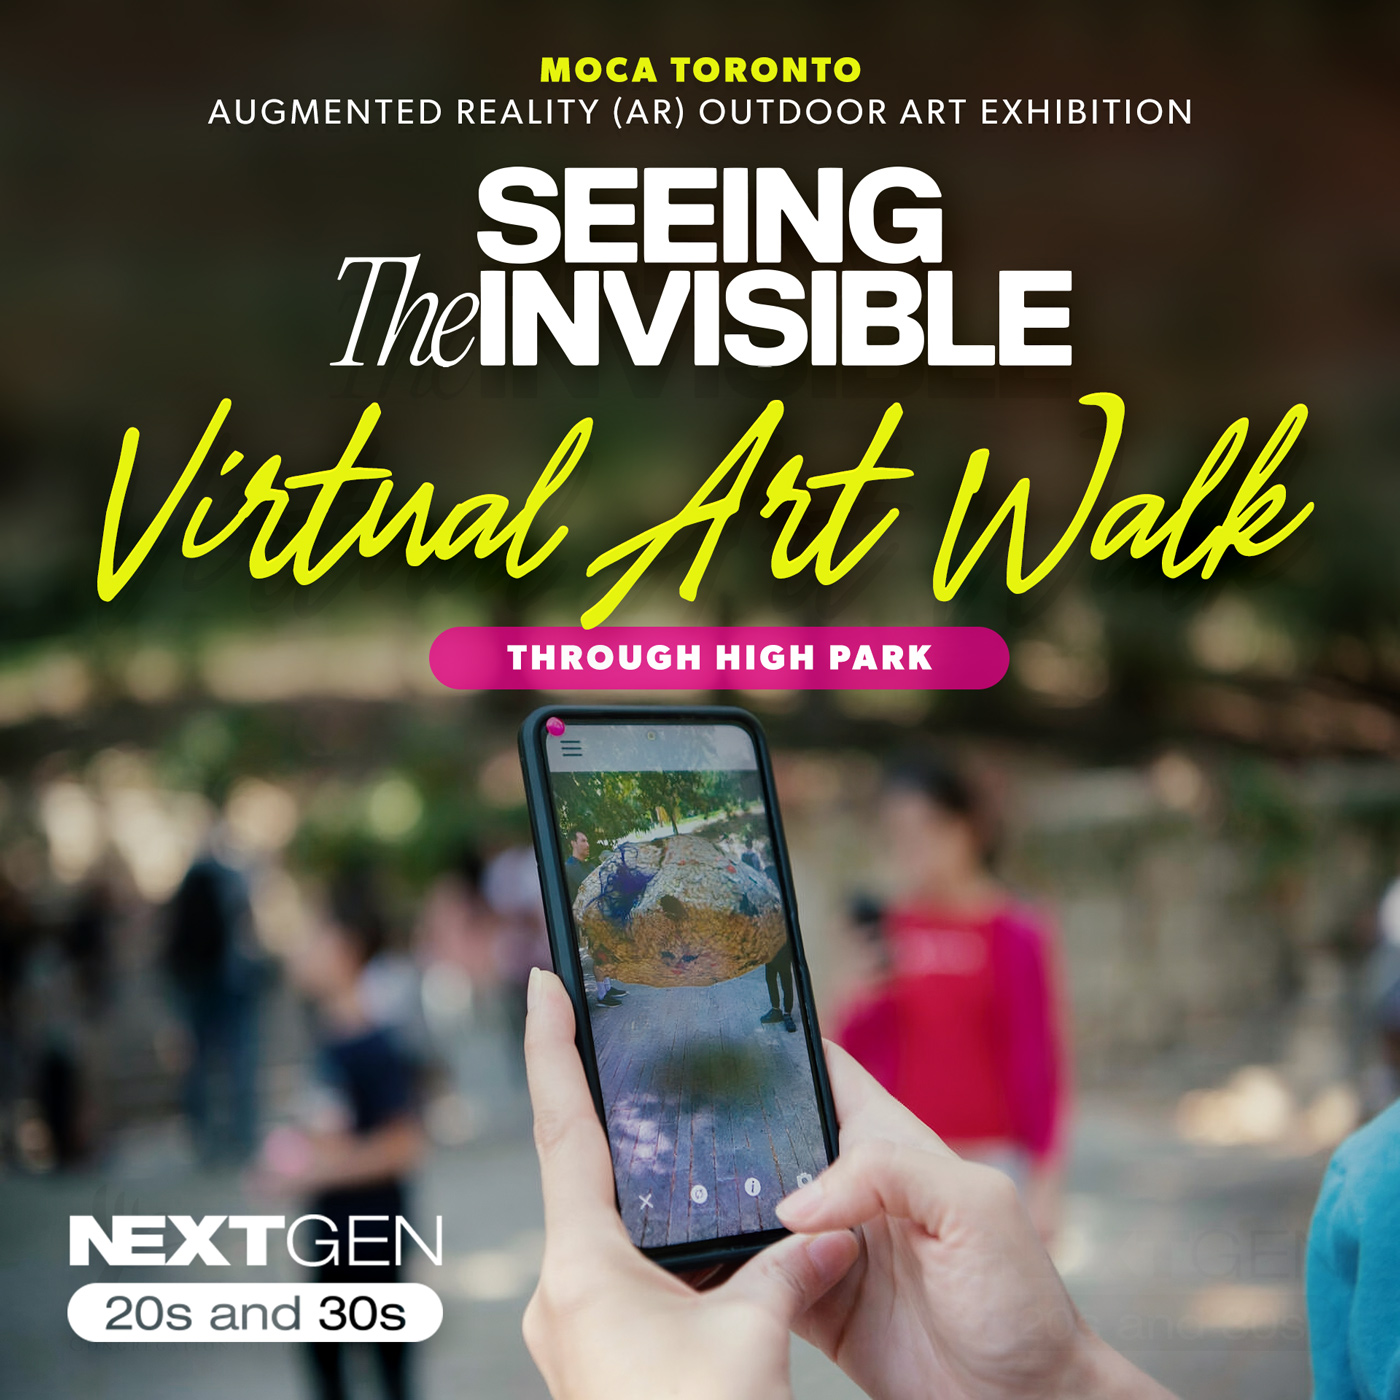 NextGen Art Walk through High Park